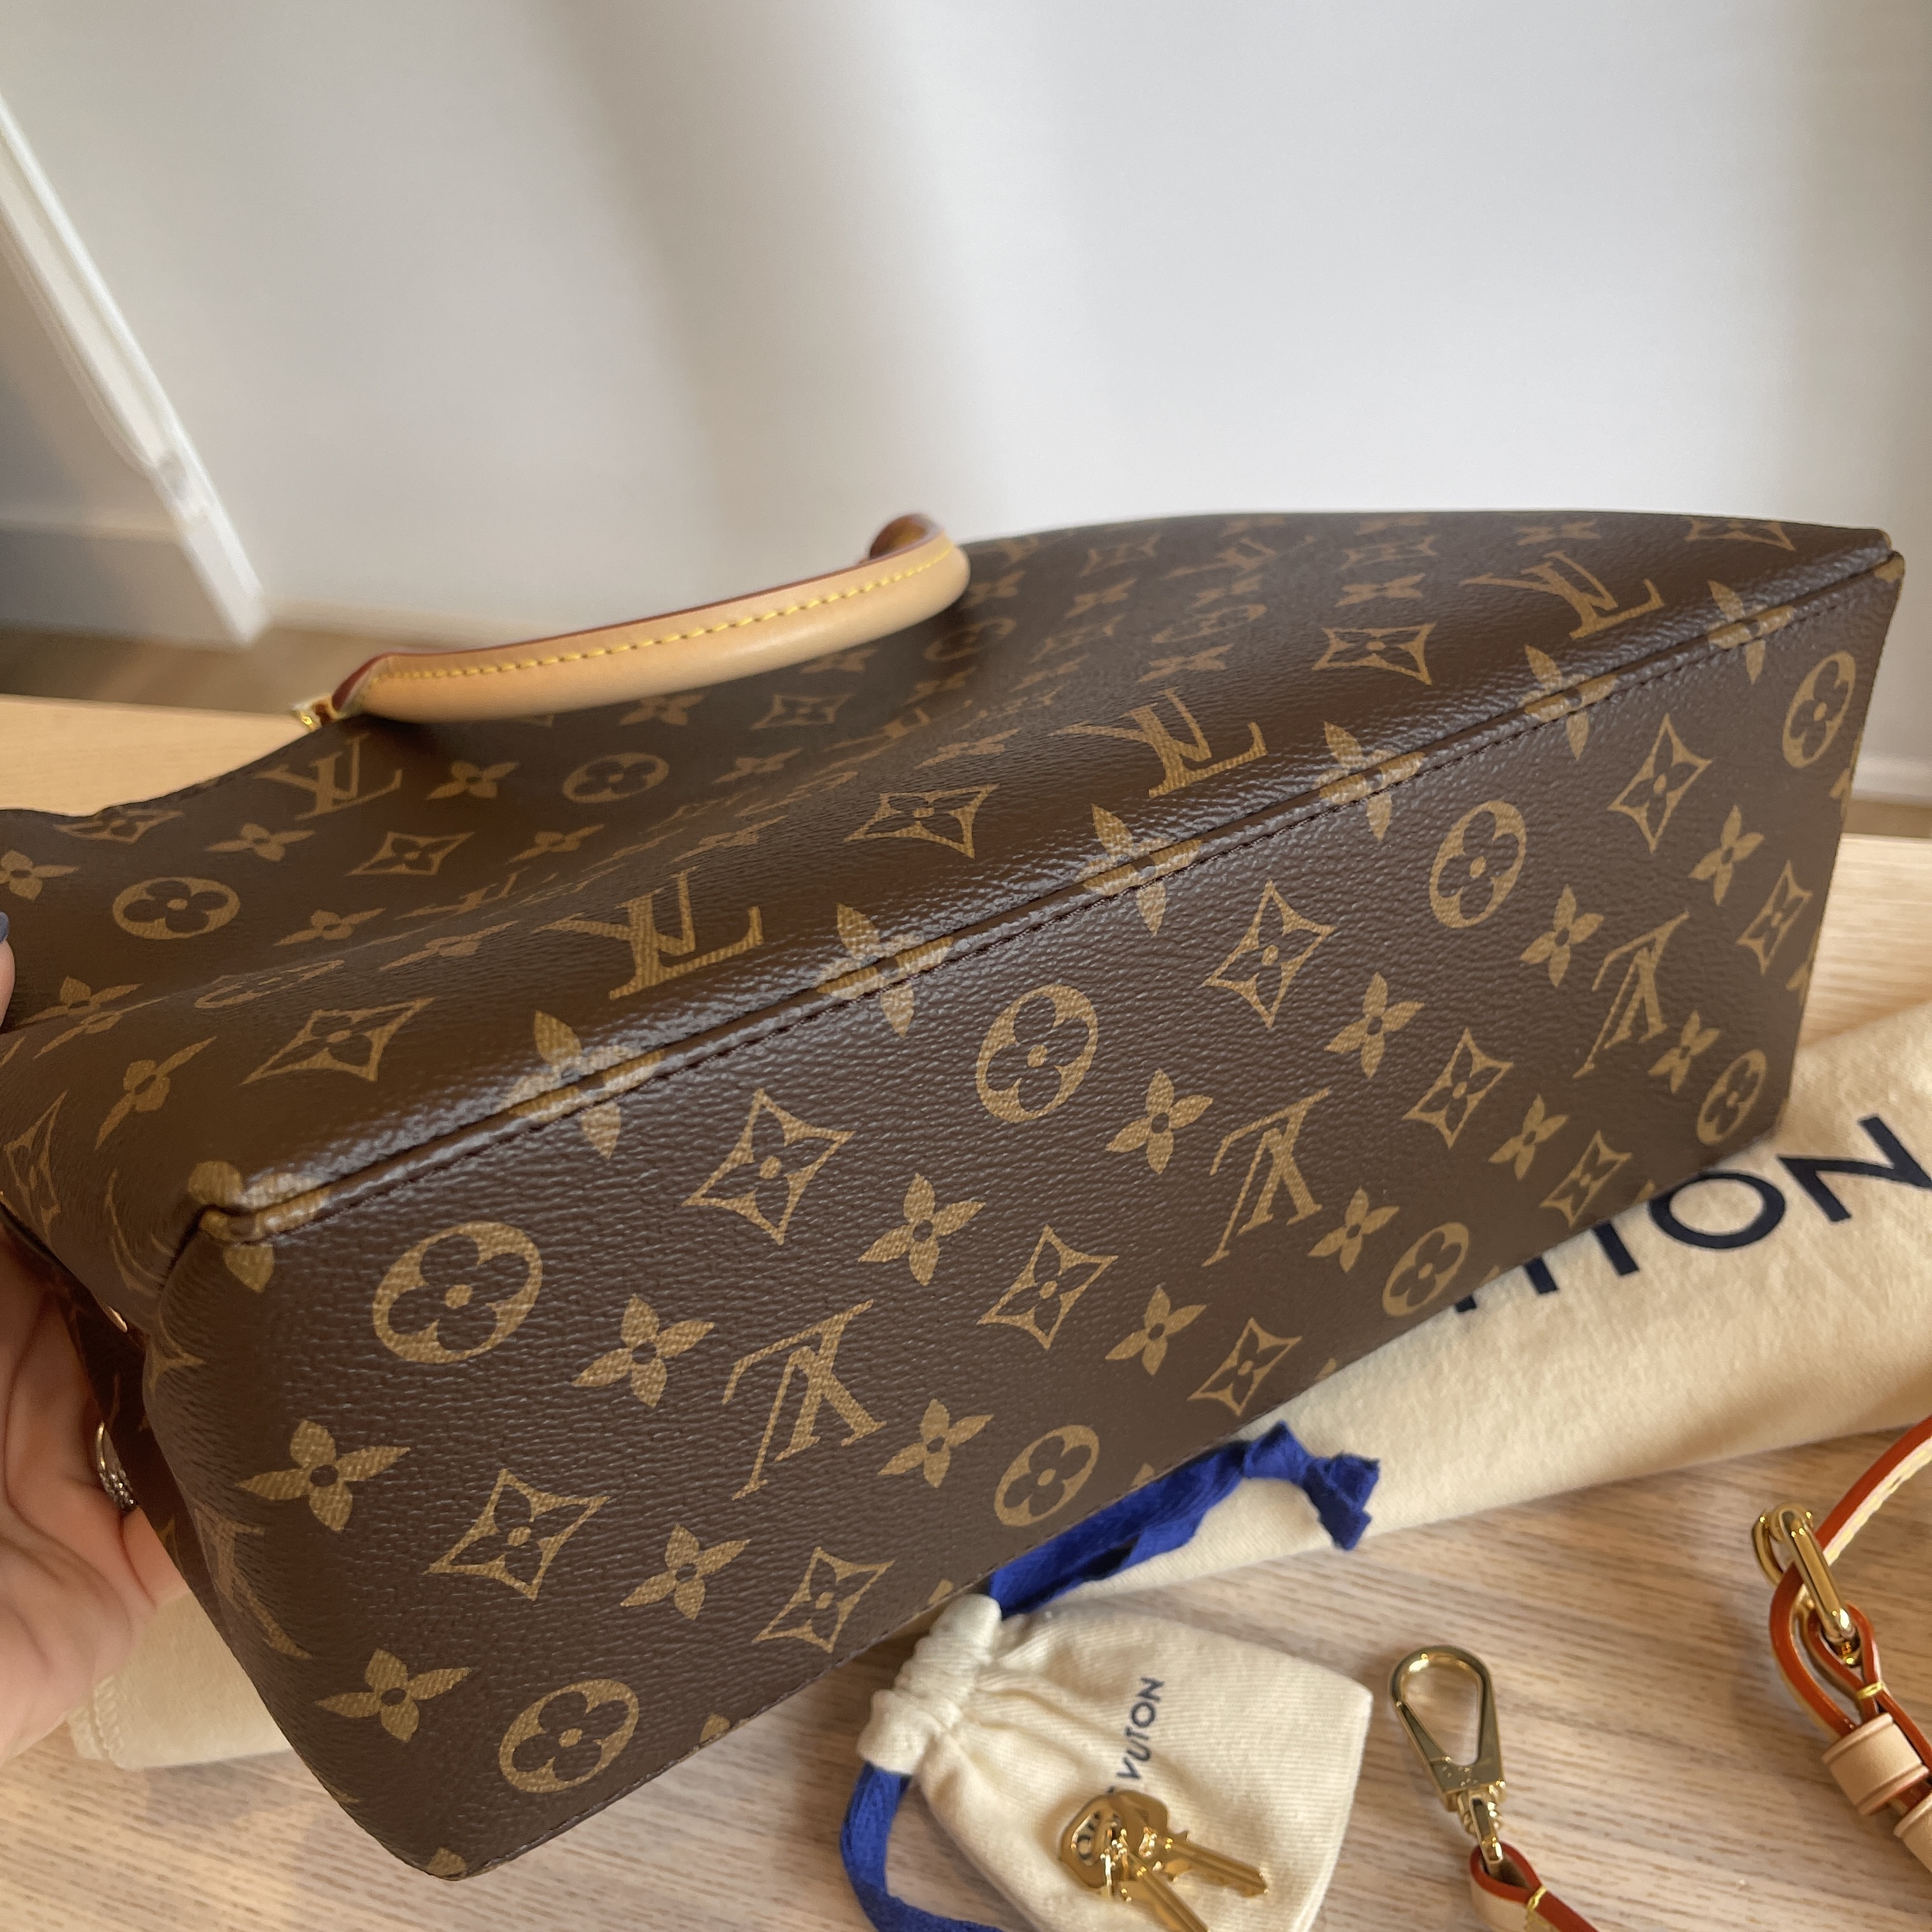 Louis Vuitton Petit Palais Tote Bag - Vitkac shop online